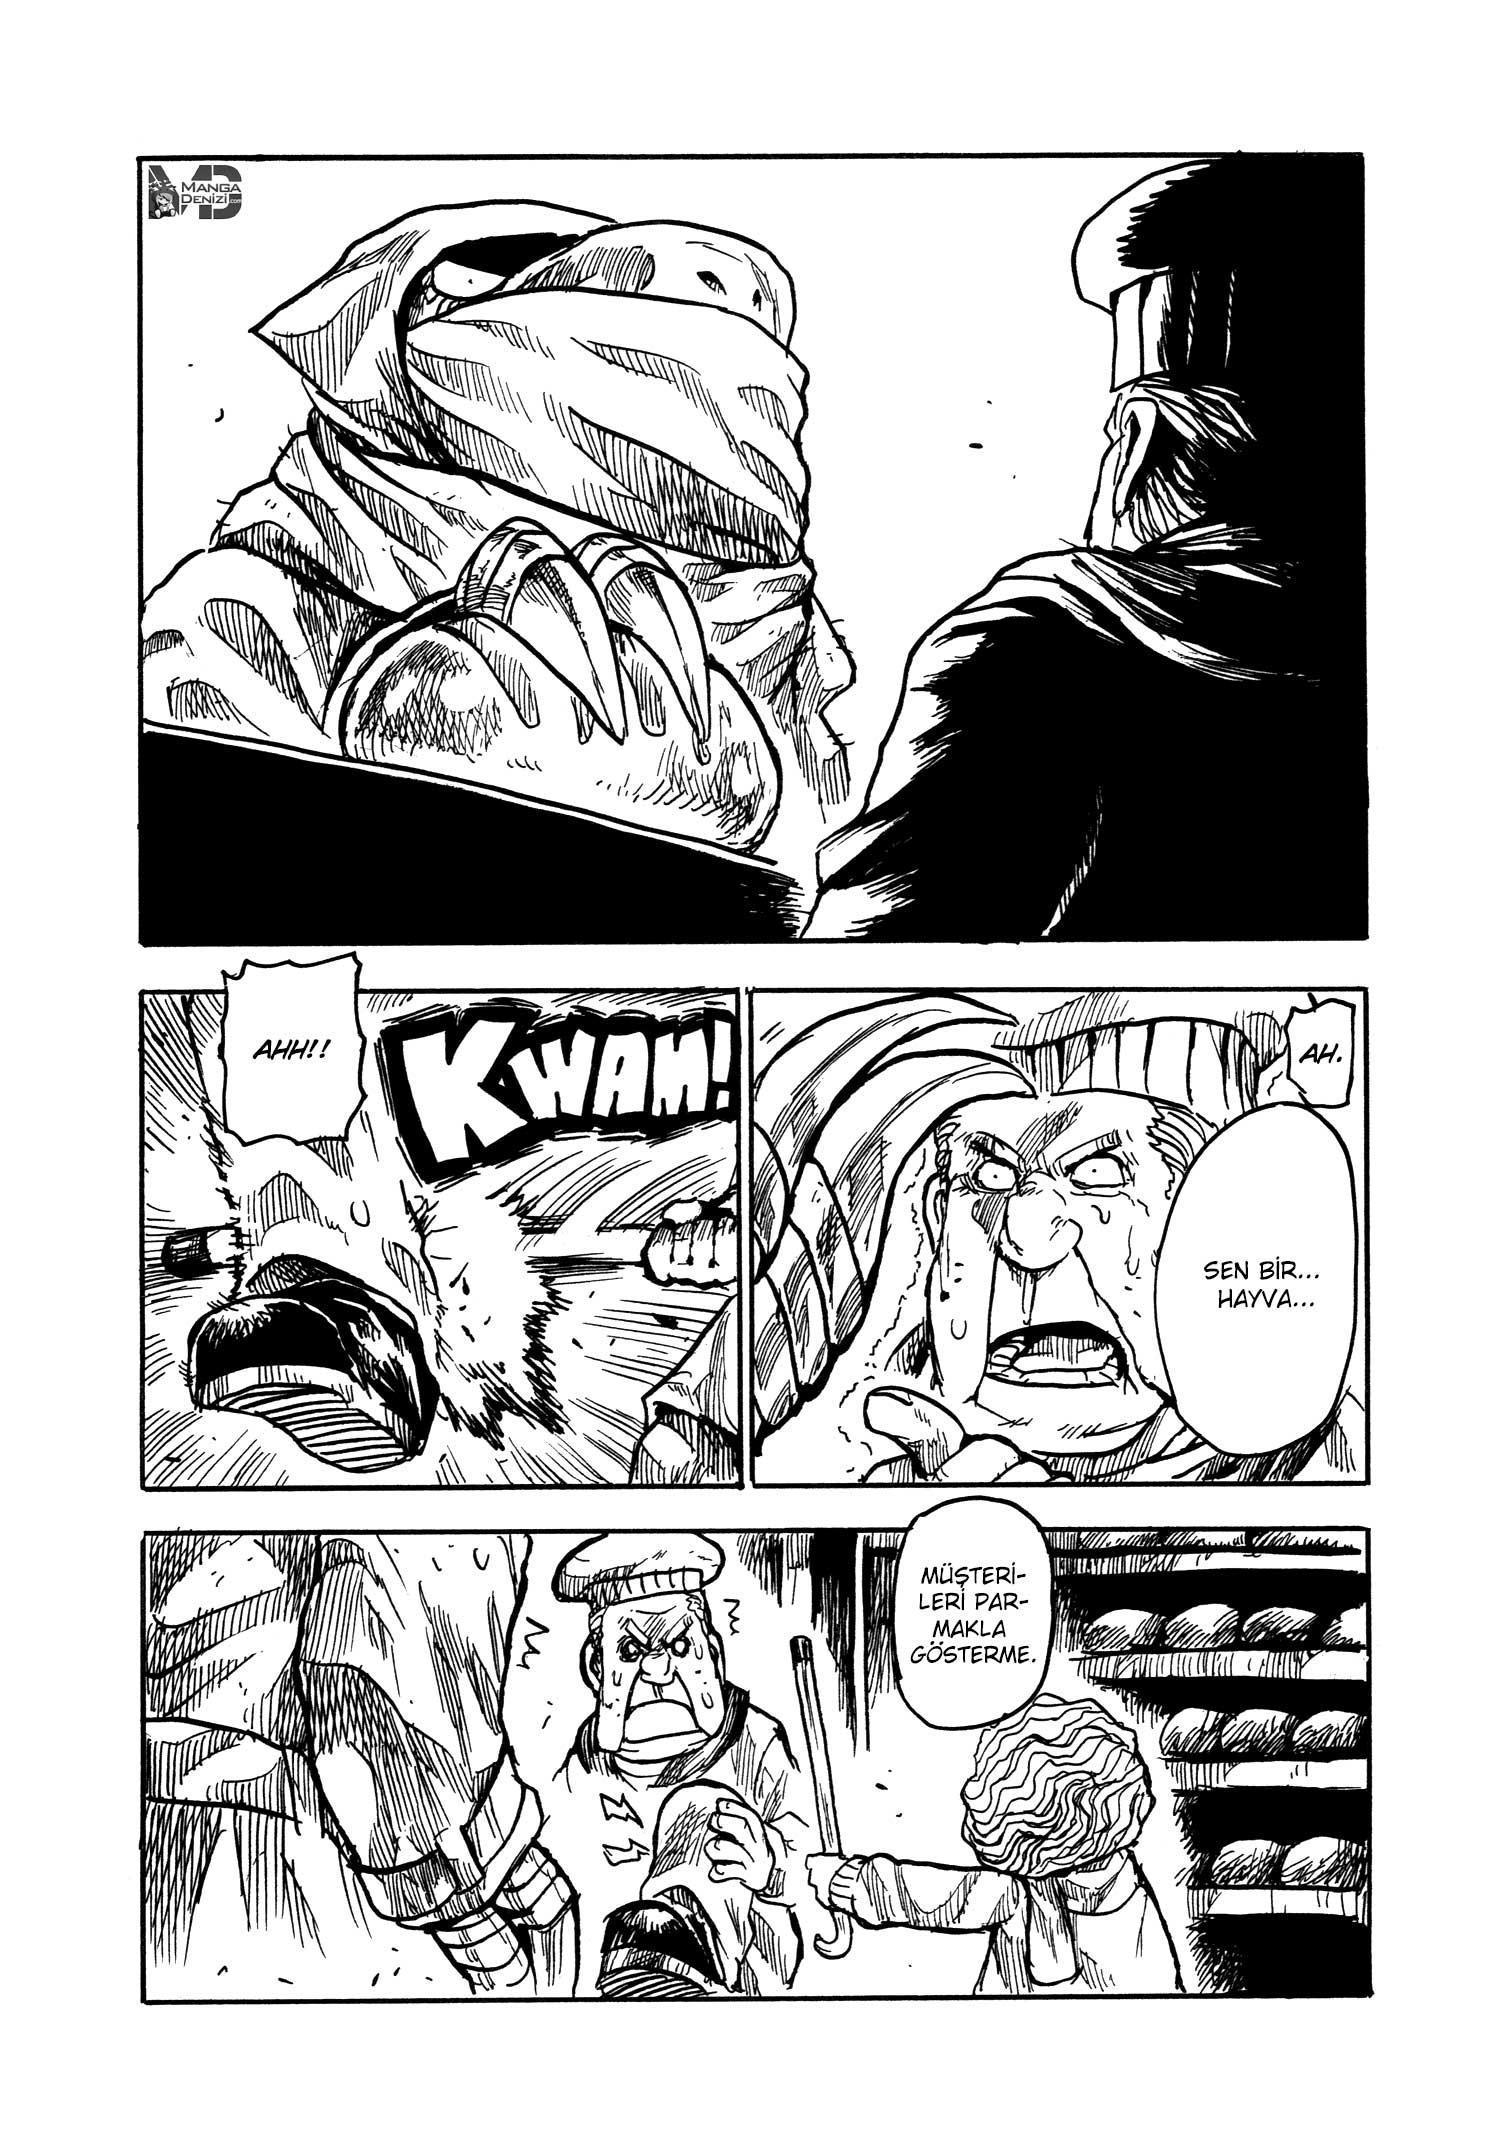 Keyman: The Hand of Judgement mangasının 24.5 bölümünün 3. sayfasını okuyorsunuz.